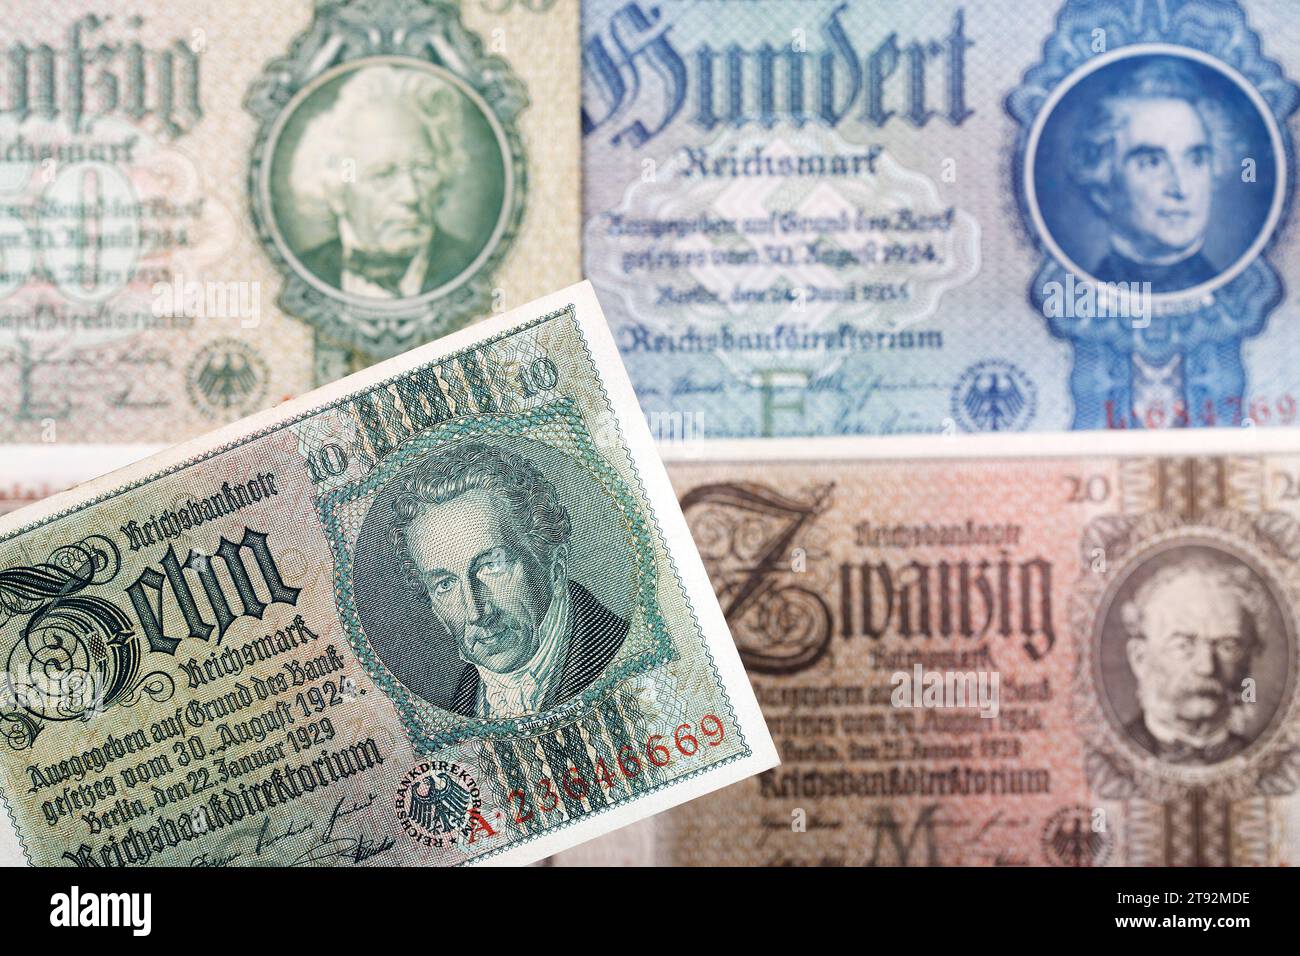 Vieil argent allemand - Reichsmark un fond d'affaires Banque D'Images